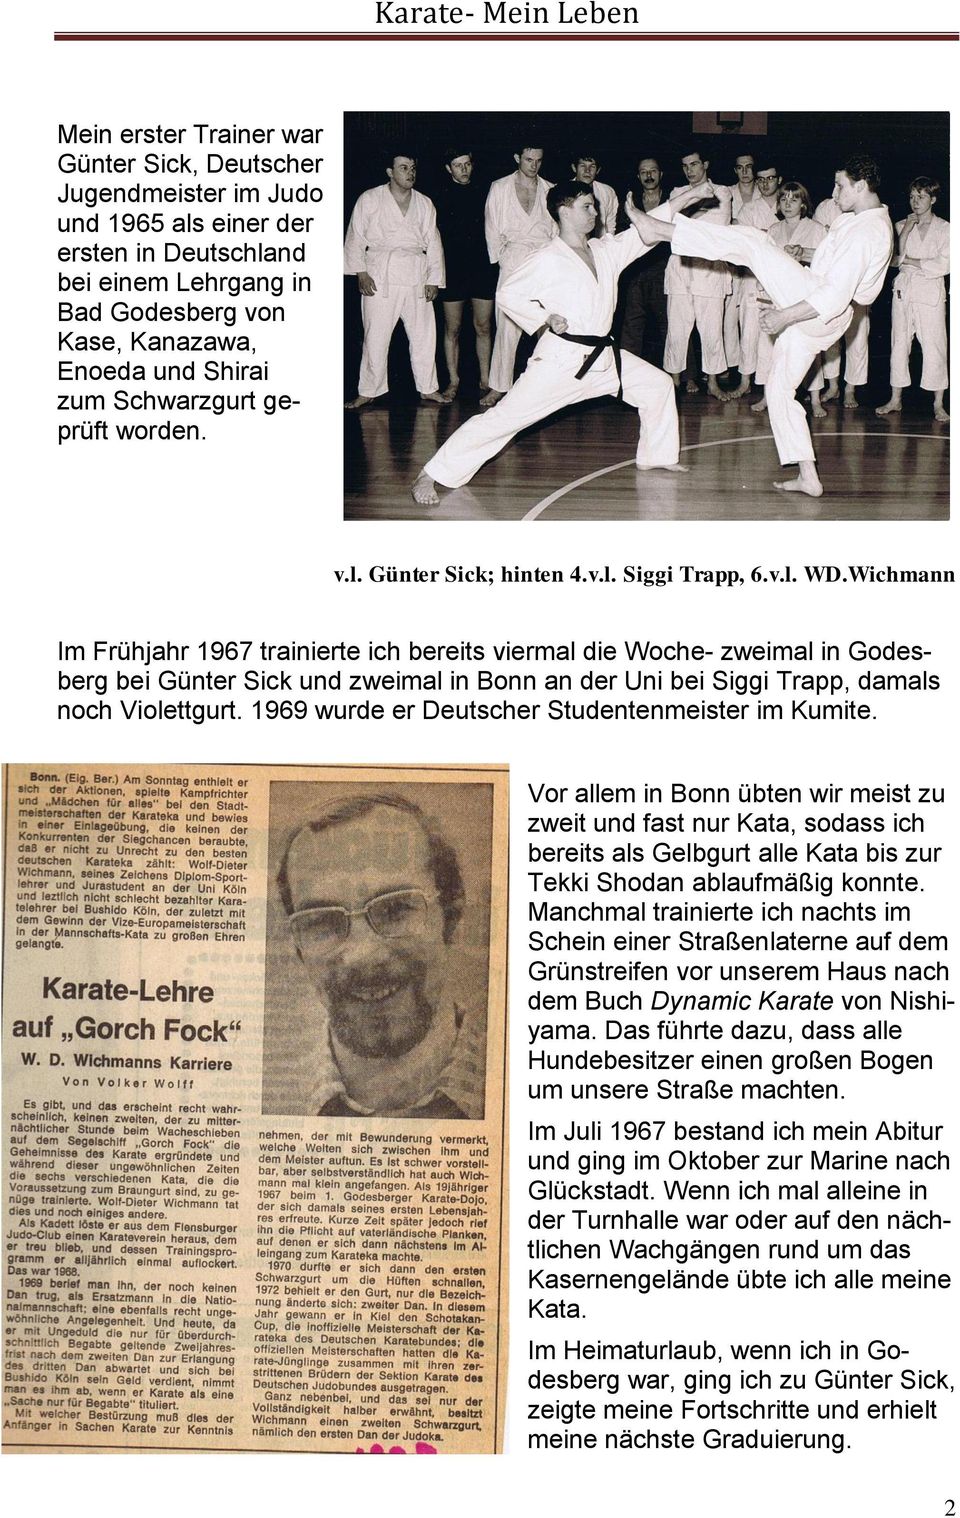 Wichmann Im Frühjahr 1967 trainierte ich bereits viermal die Woche- zweimal in Godesberg bei Günter Sick und zweimal in Bonn an der Uni bei Siggi Trapp, damals noch Violettgurt.